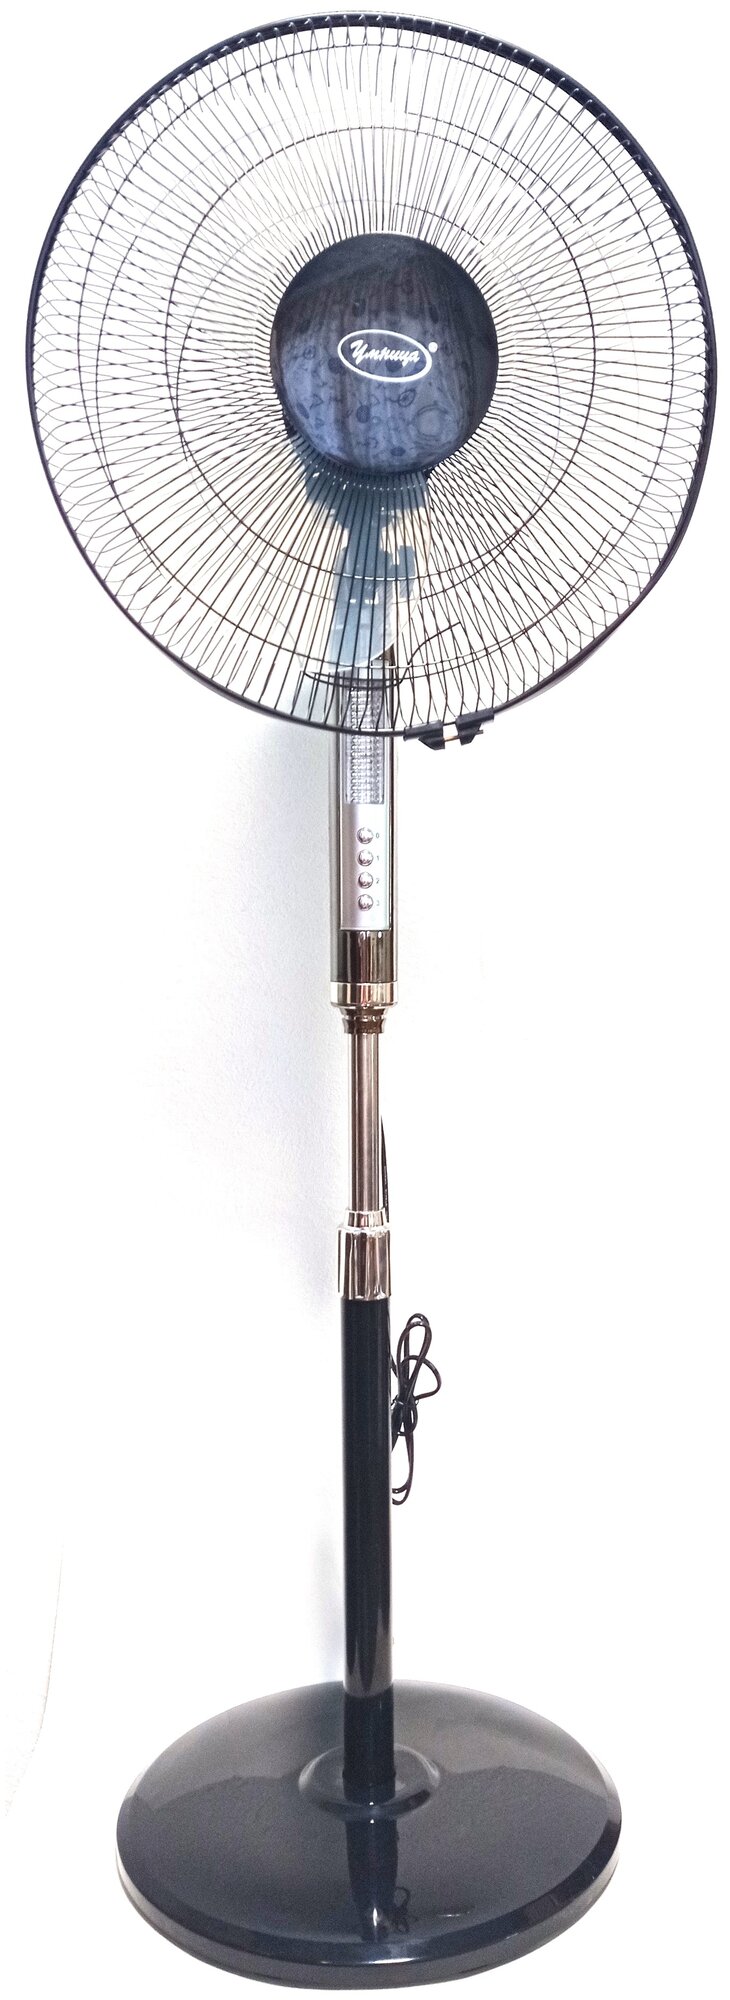 Вентилятор напольный "Умница" модель ВН-16Н со встроенной подсветкой